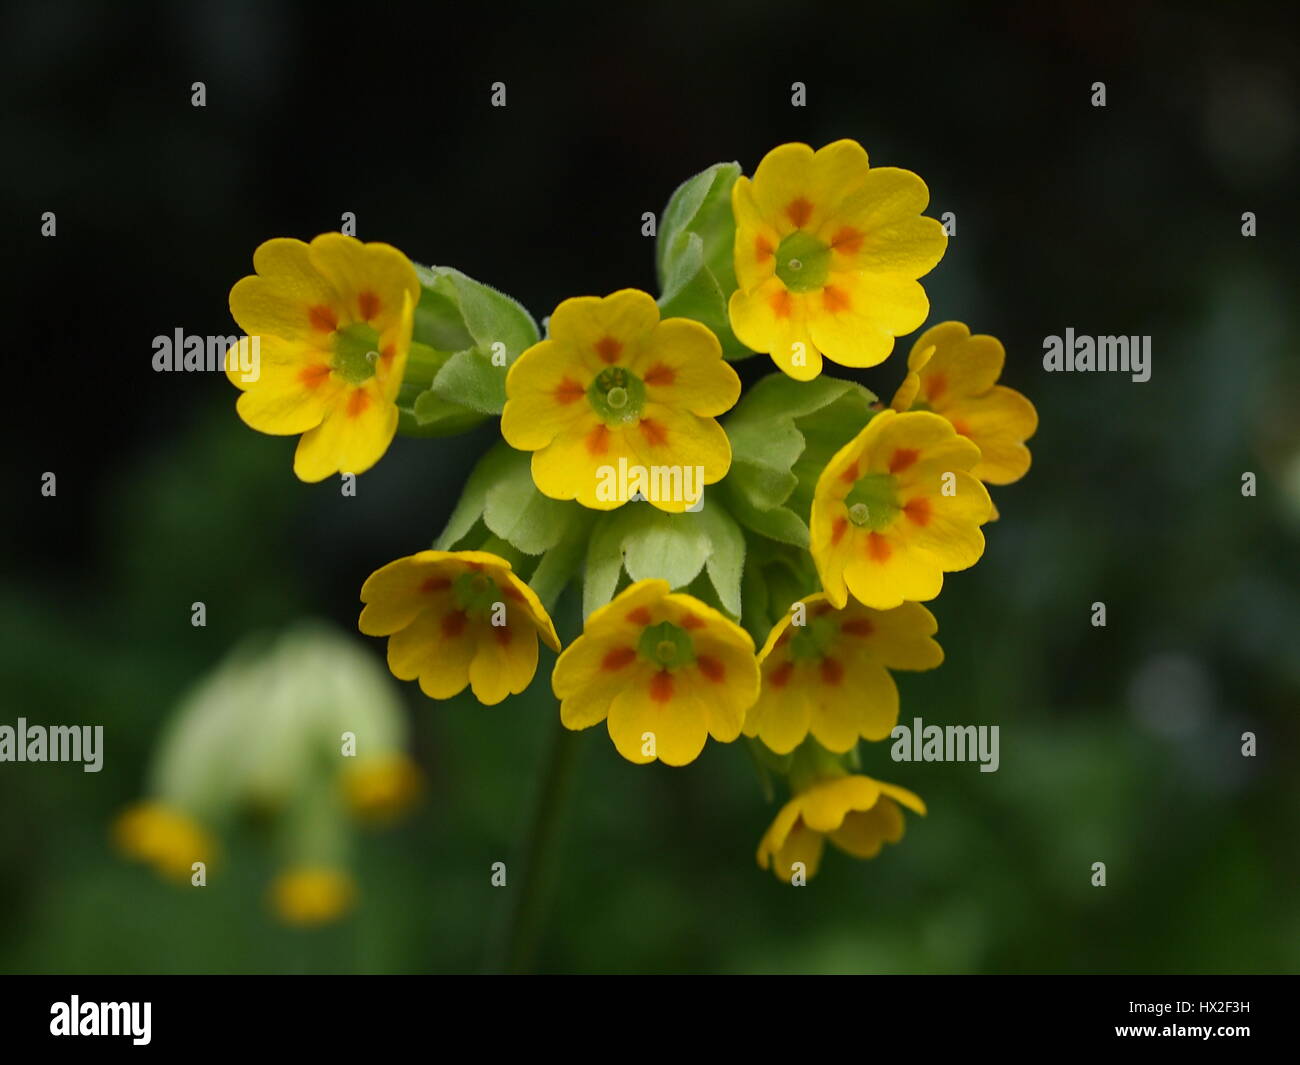 Primula Vulgaris; gemeinsamen Schlüsselblume wächst in den Rasen. Makro-Detail der Röschen und Staubblätter. Mehr Schlüsselblumen im Hintergrund. Stockfoto